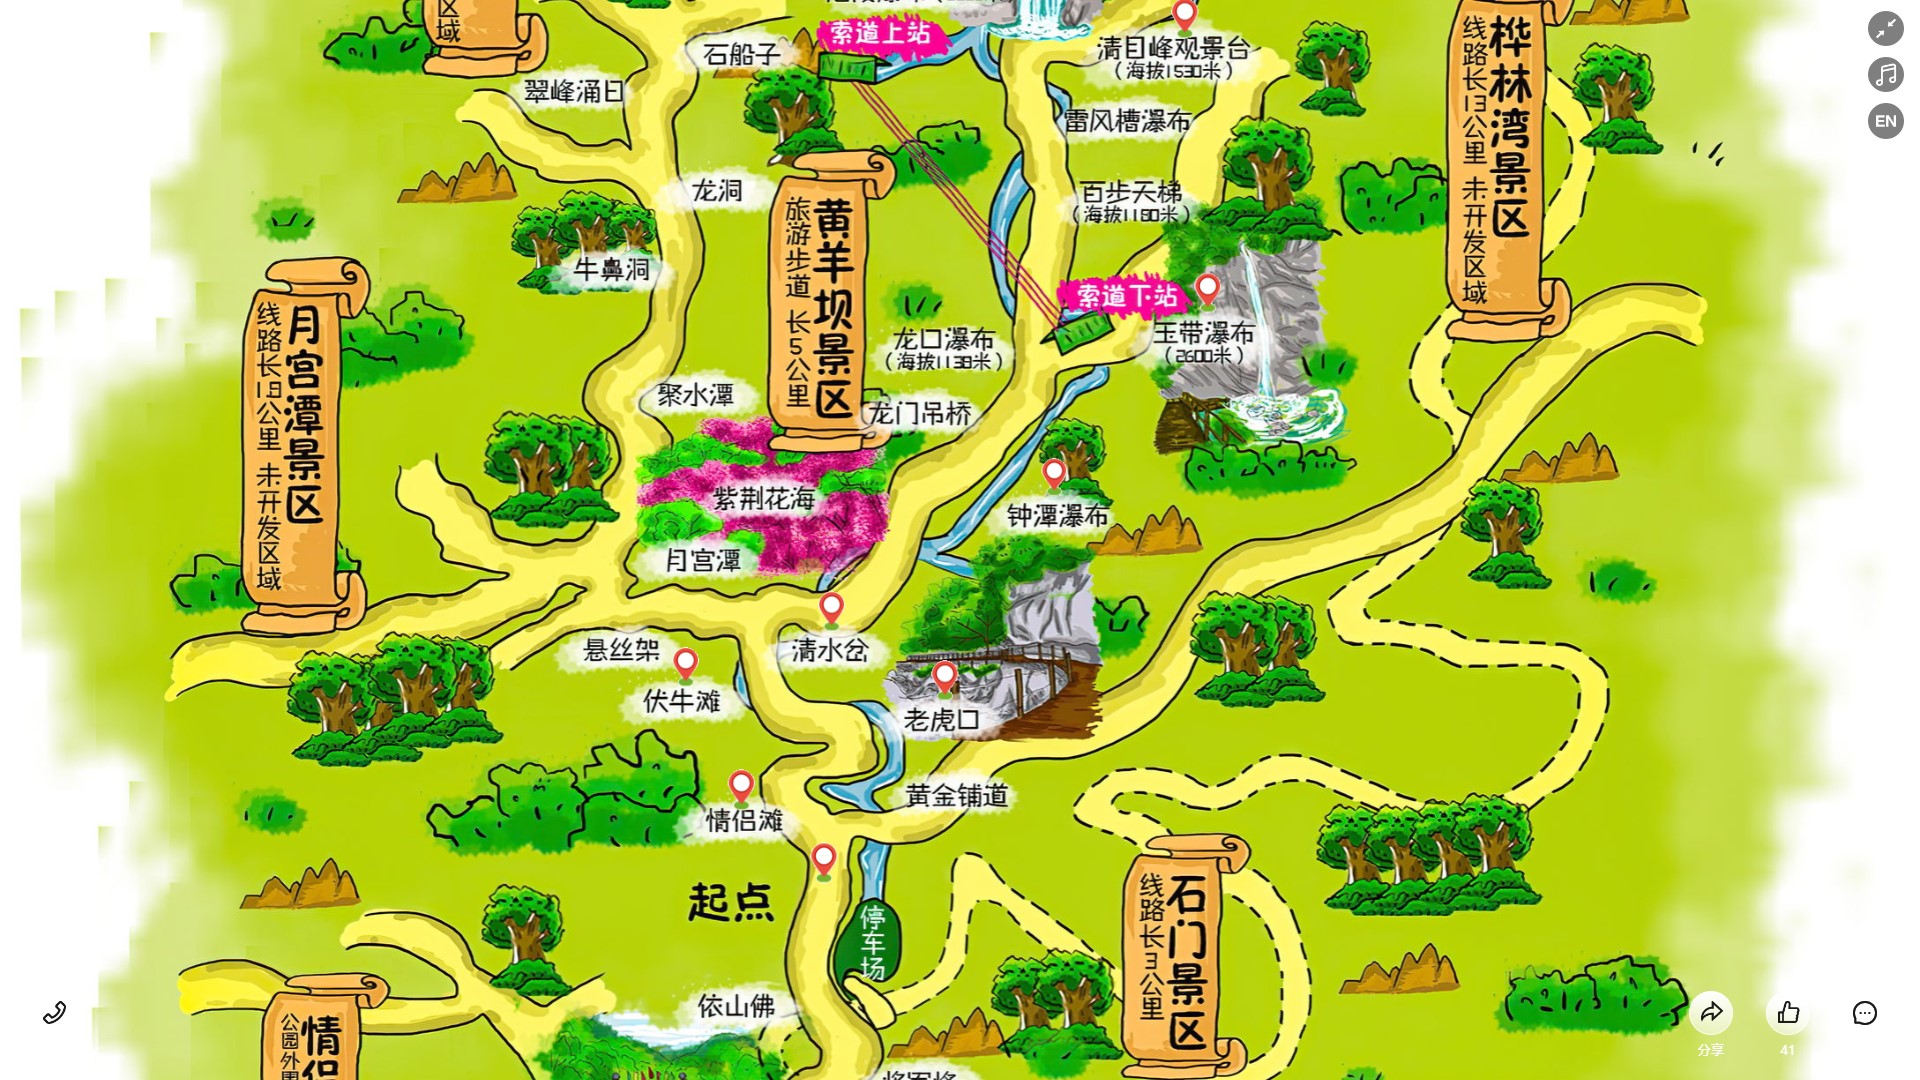 桃山景区导览系统